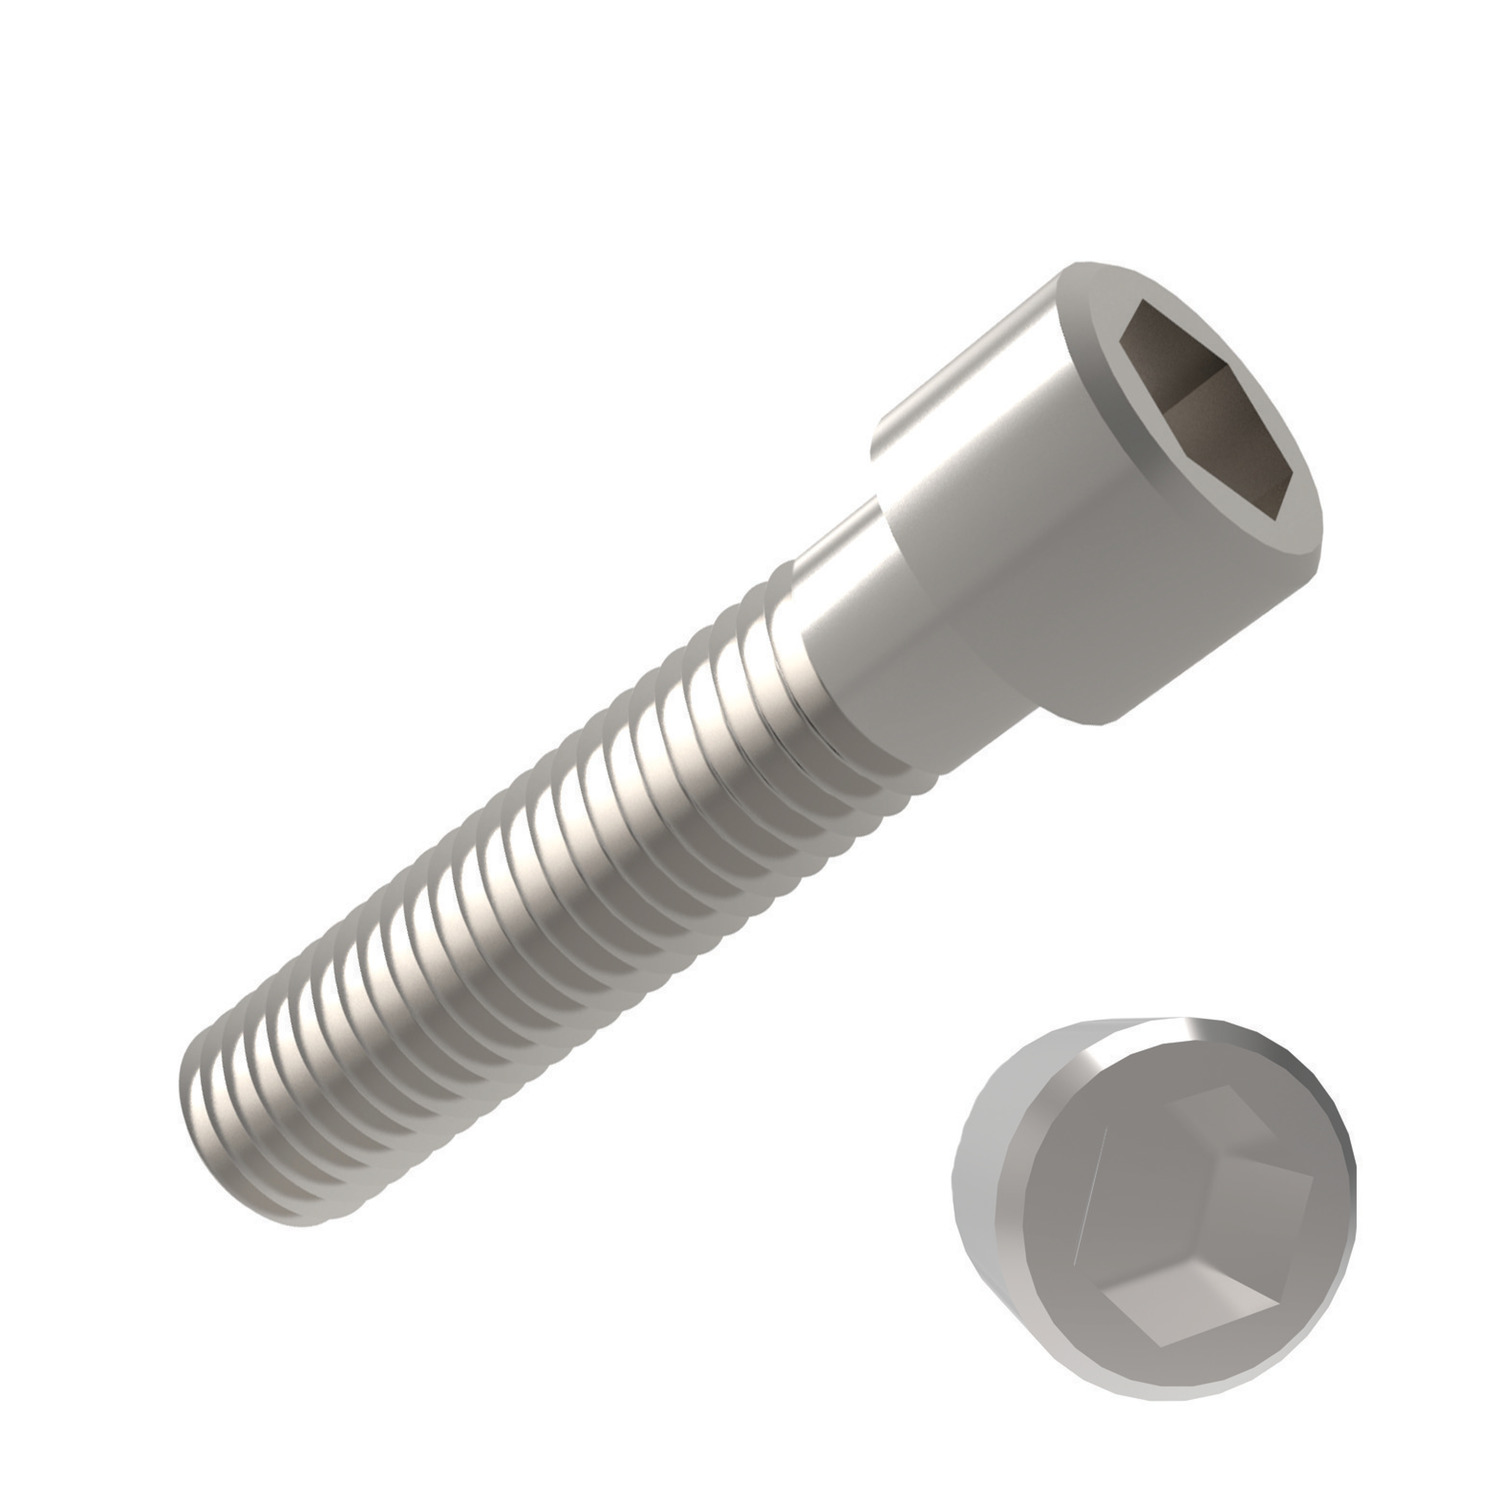 P0200.016-008-A2 Socket Cap Screw  M1.6x8 A2 s/s -